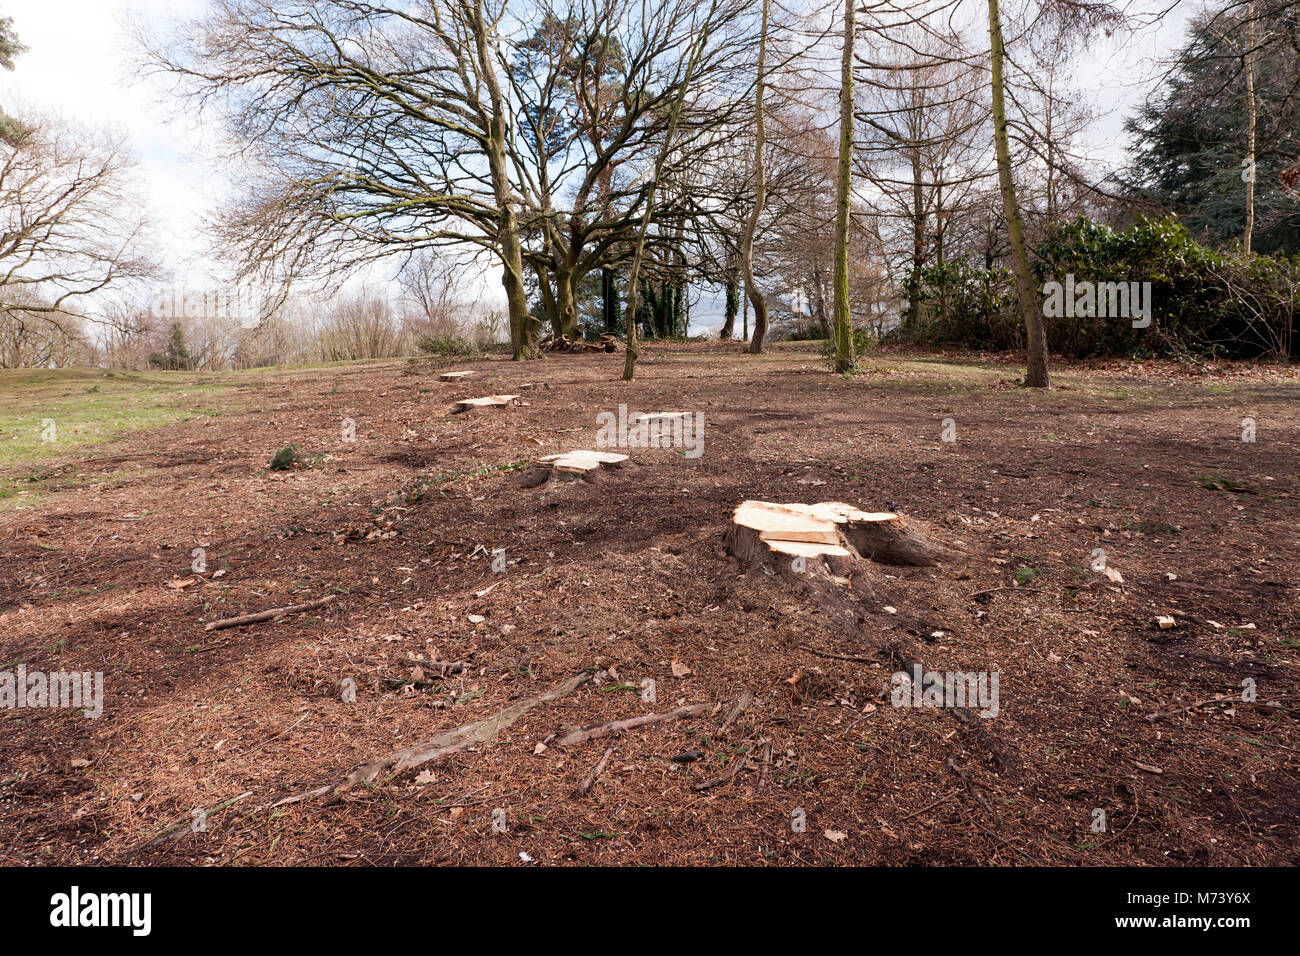 Eine ganze Stand von Bäumen aus Beckenham Place Park entfernt worden, so dass eine große Fläche, die mangelhaft ist in Anlage abdecken, die für Vögel und Wildtiere. Stockfoto